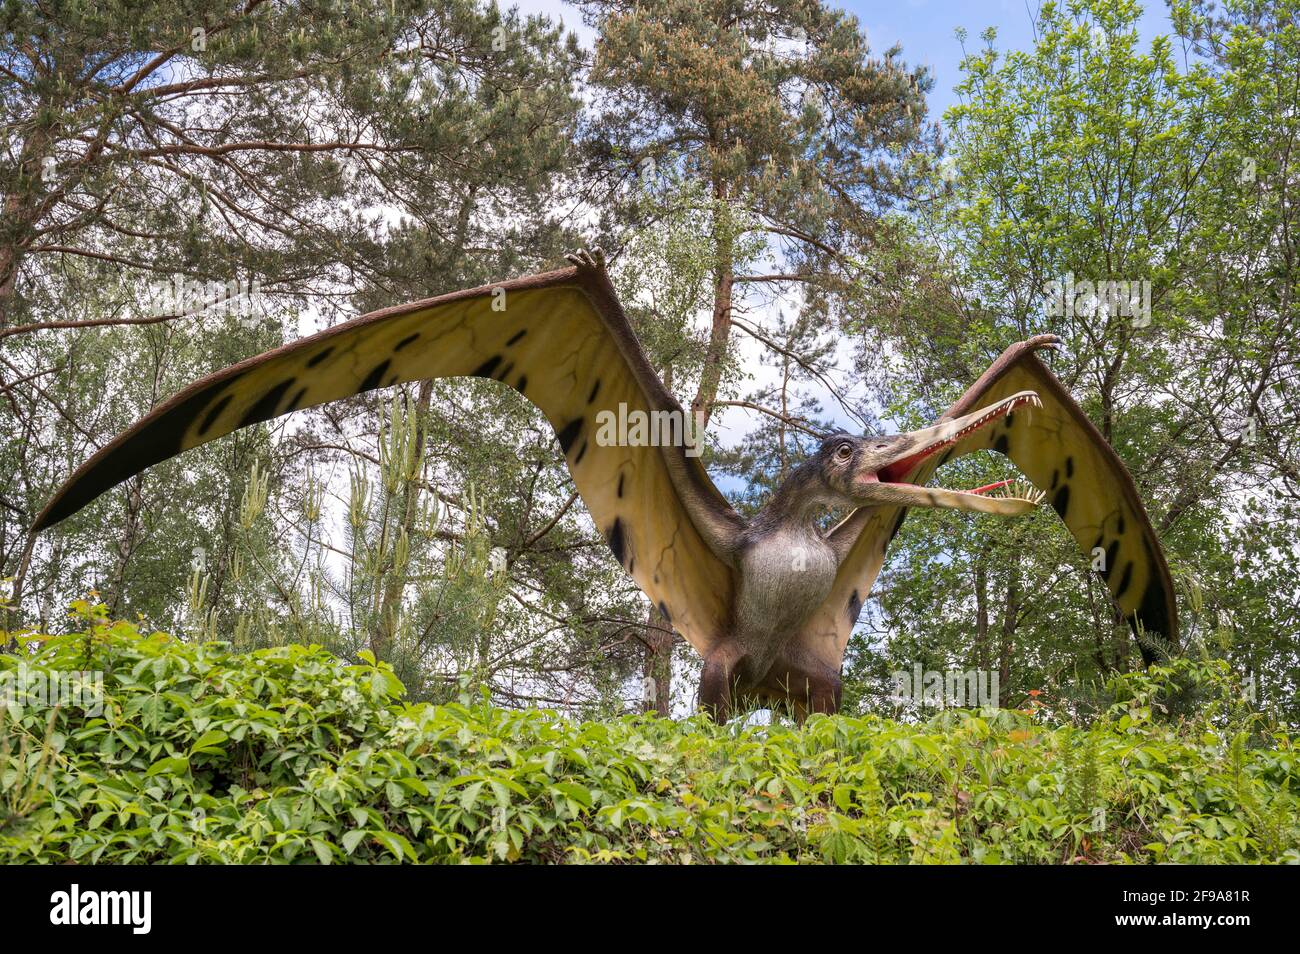 Pterosaur Cearadactylus come modello in Dinopark Münchehagen vicino Hannover. Alare circa 4m, peso circa 15kg, vissuto circa 105 milioni di anni fa (Cretaceo) in Sud America. Foto Stock